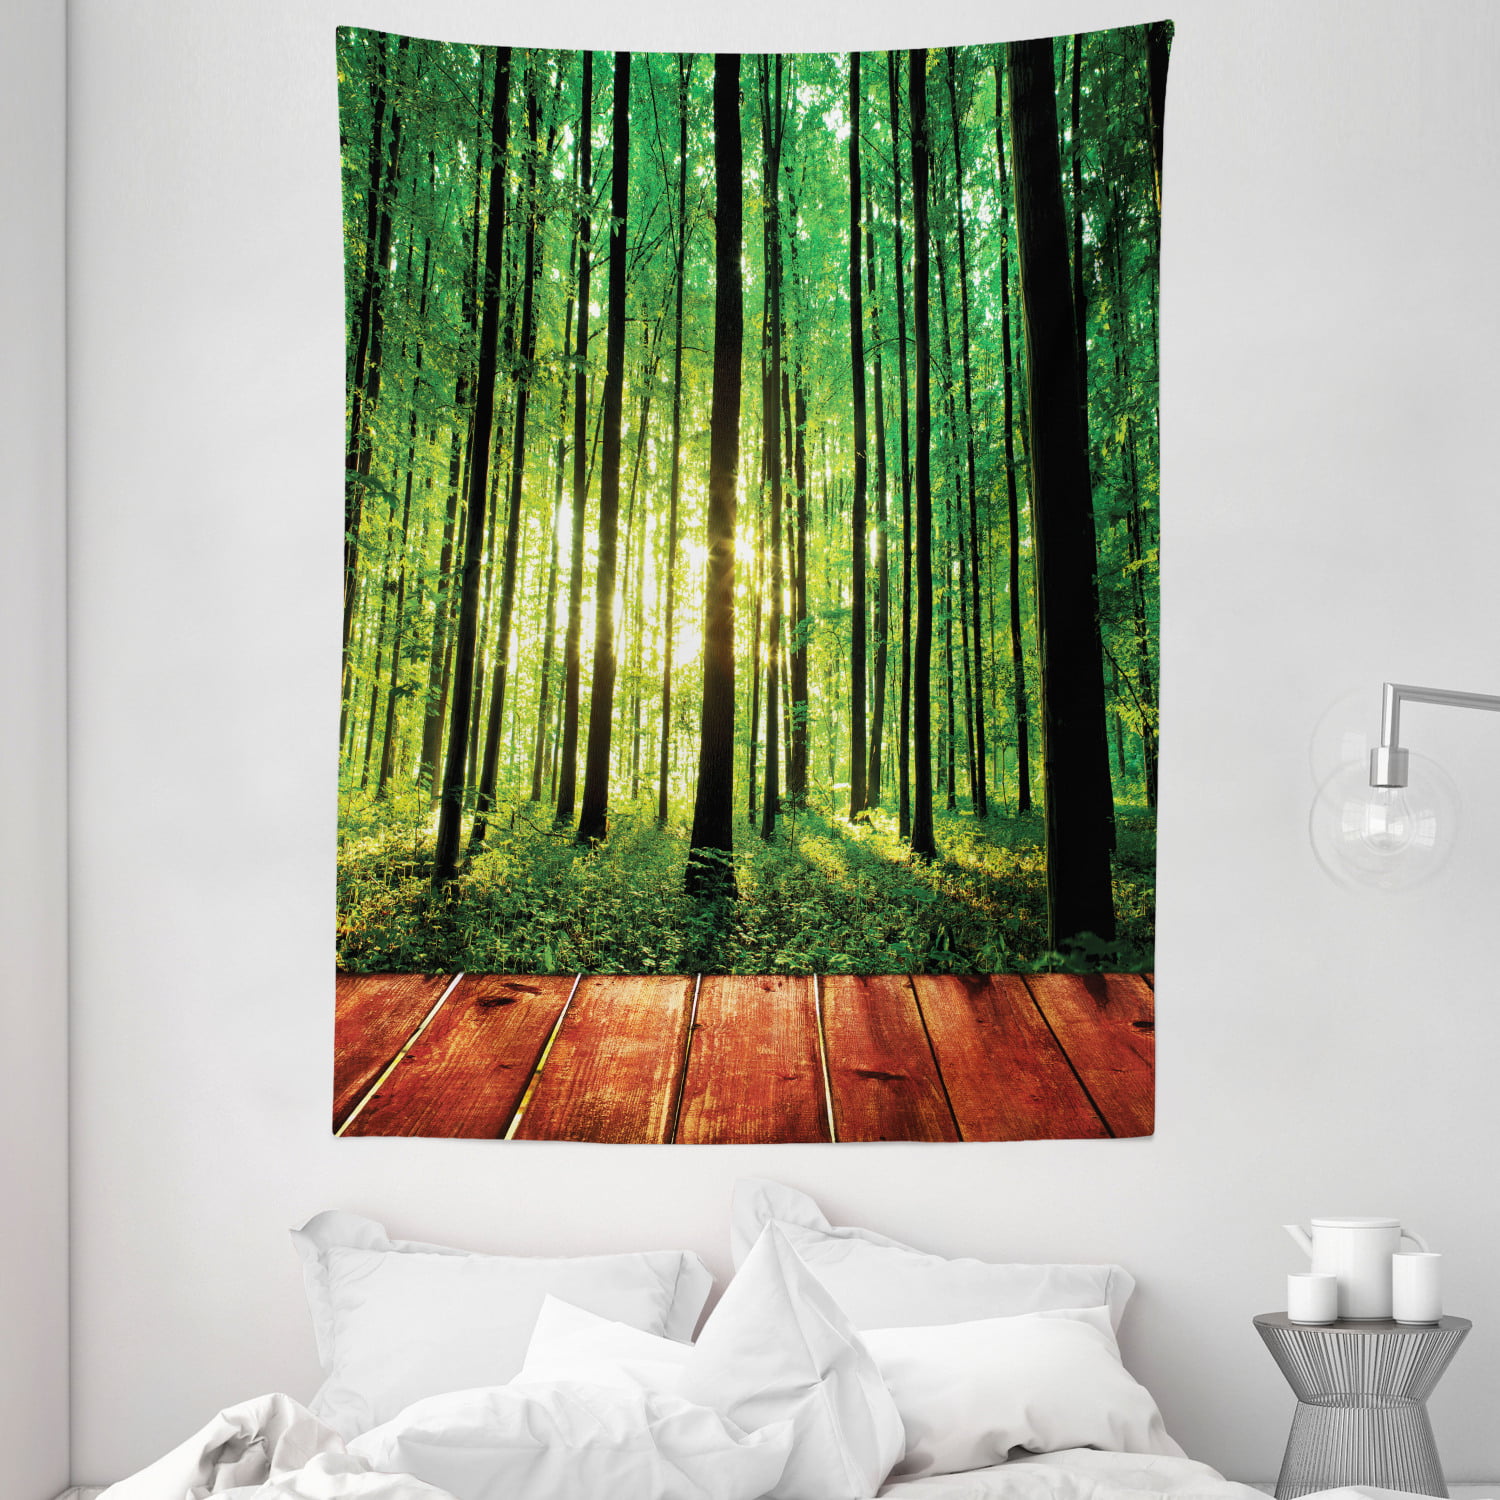 Sunlight Tropical Rainforest Scene Tapestry Wall Hanging for Living Room Bedroom 